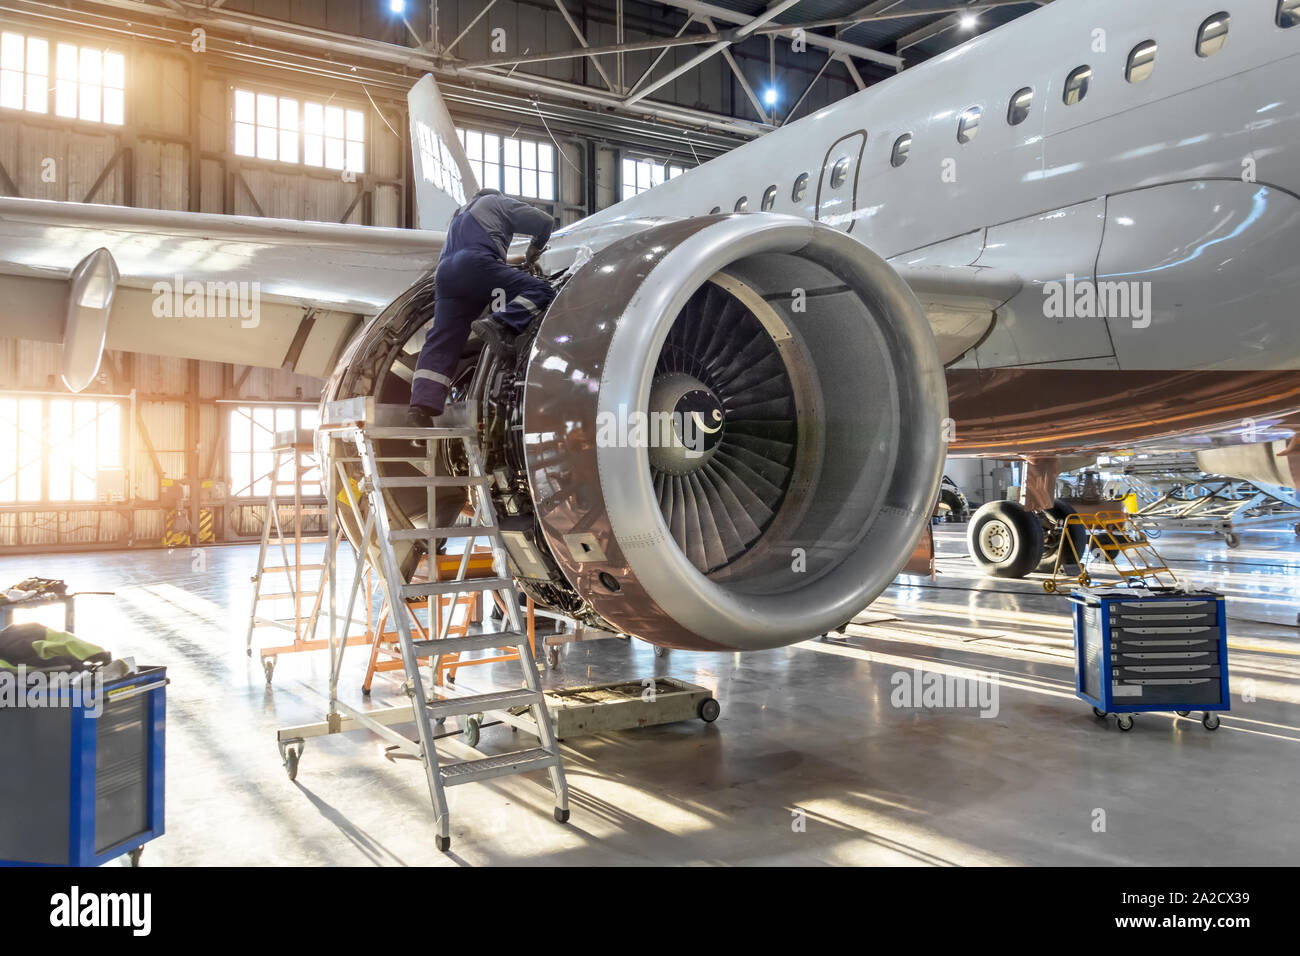 Mechaniker Spezialist Reparaturen, die Wartung der Motor eines Passagierflugzeugs in einem Hangar. Stockfoto